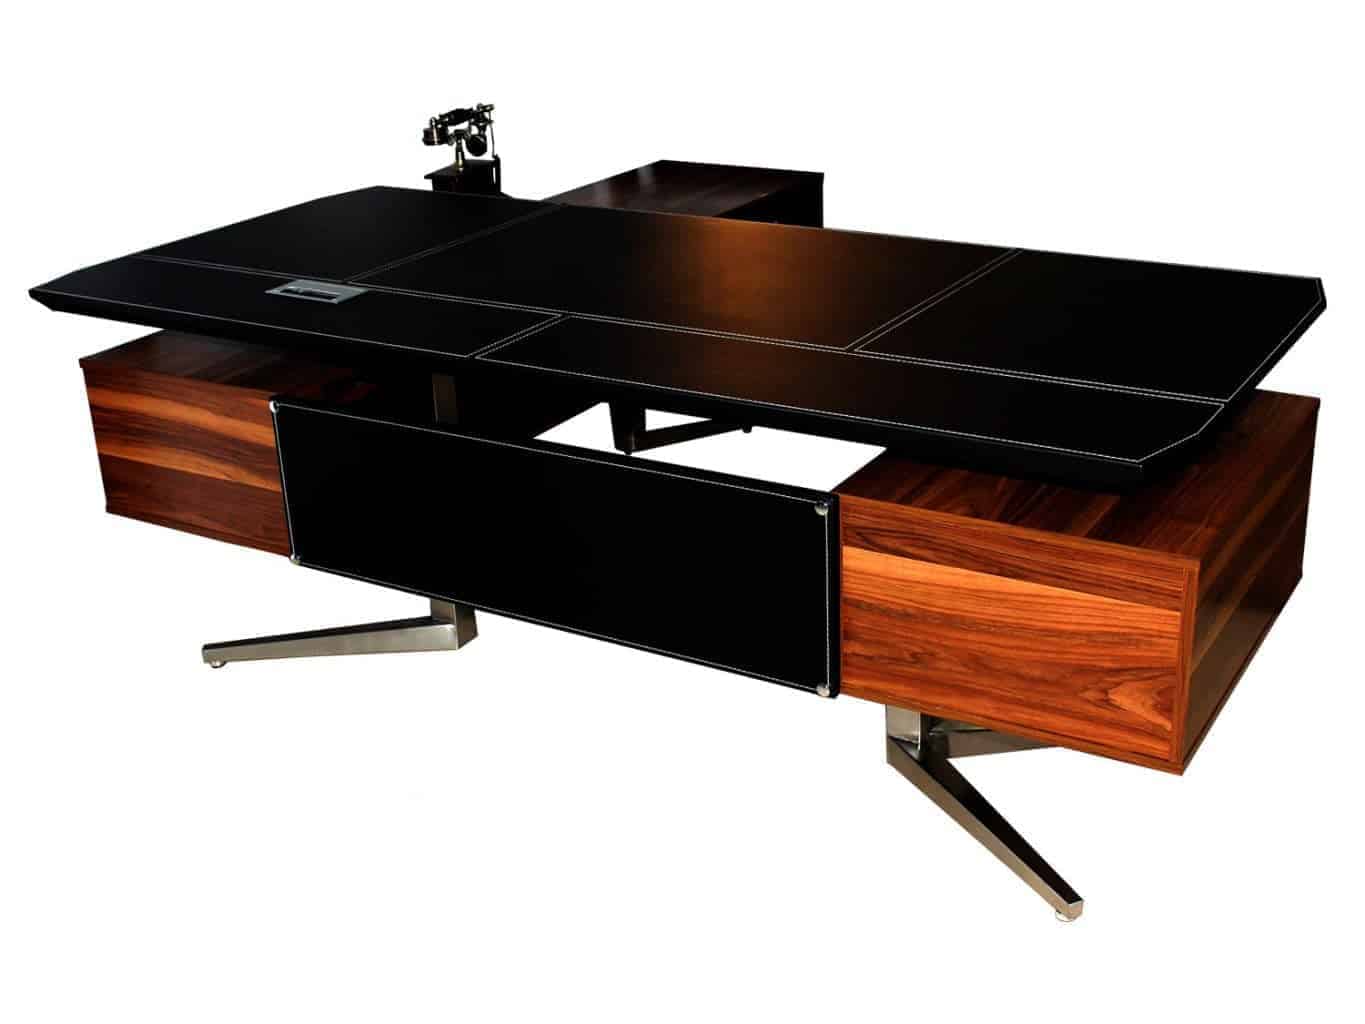 שולחן מנהל מפואר דגם טוסקנה בשילוב עץ